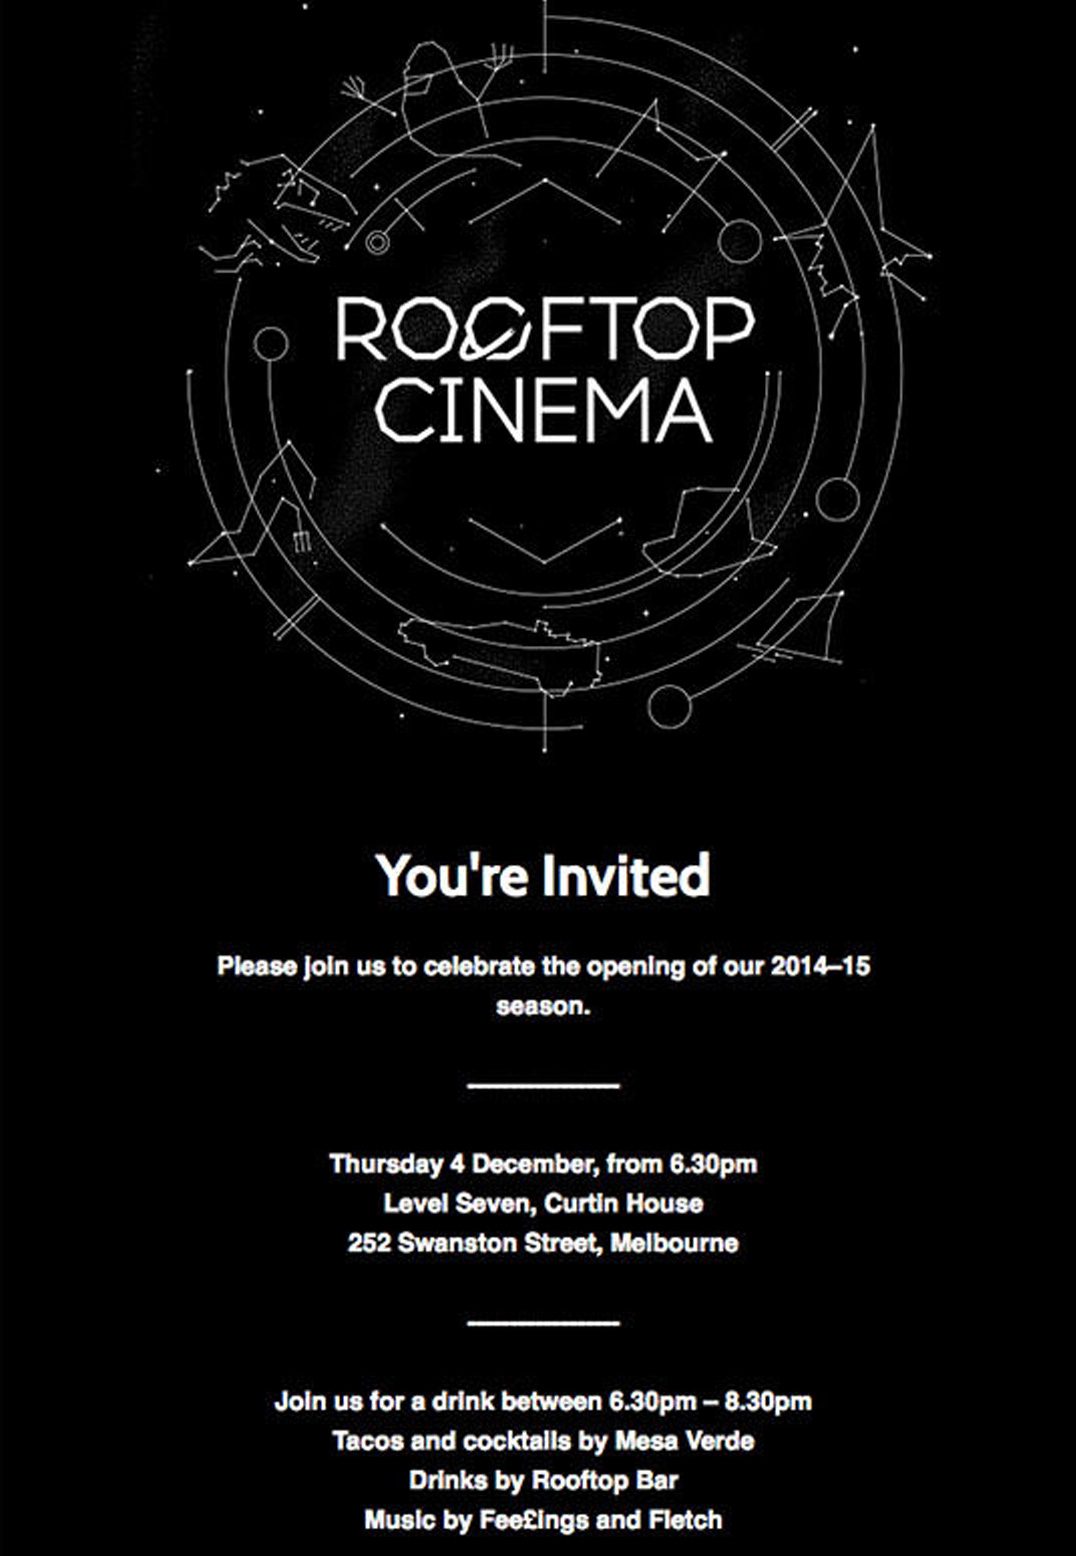 Стильное и простое письмо Rooftop Cinema. Черный цвет в сочетании с абстрактной графикой создает ощущение некой секретности. Источник: Campaign Monitor.